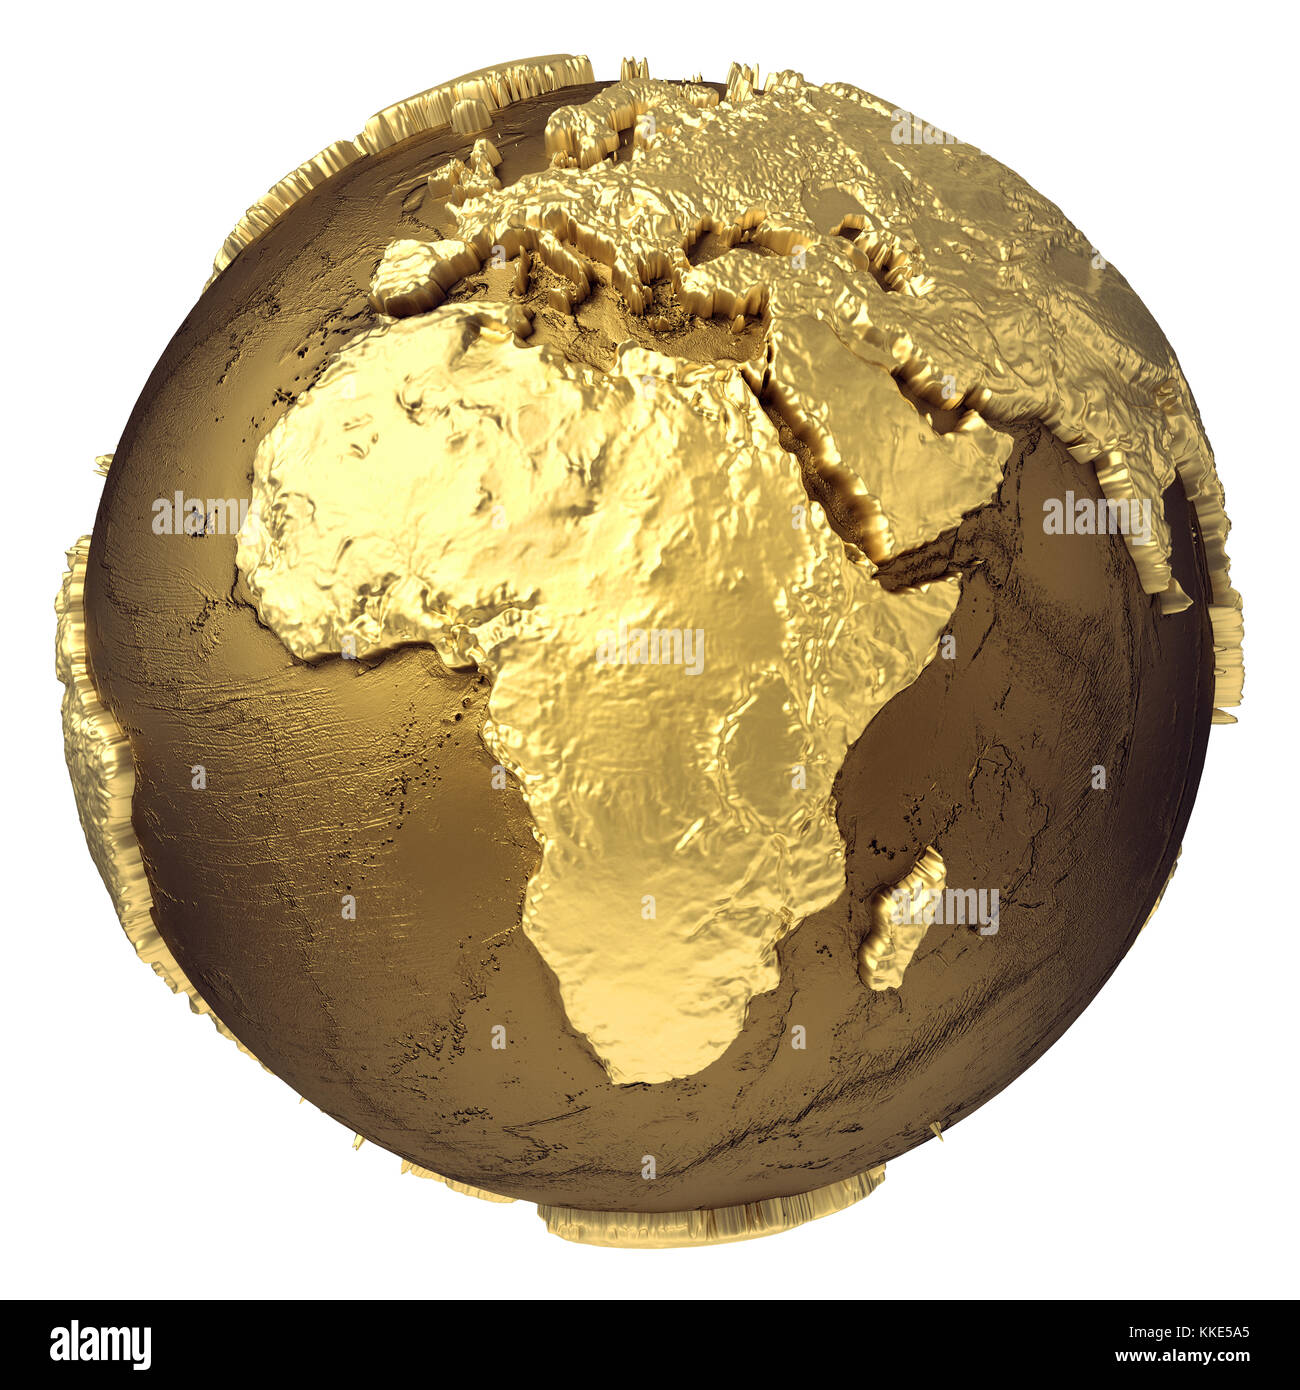 Golden Globe Modell ohne Wasser. Afrika. 3D-Rendering auf weißem Hintergrund. Elemente dieses Bild von der Nasa eingerichtet Stockfoto